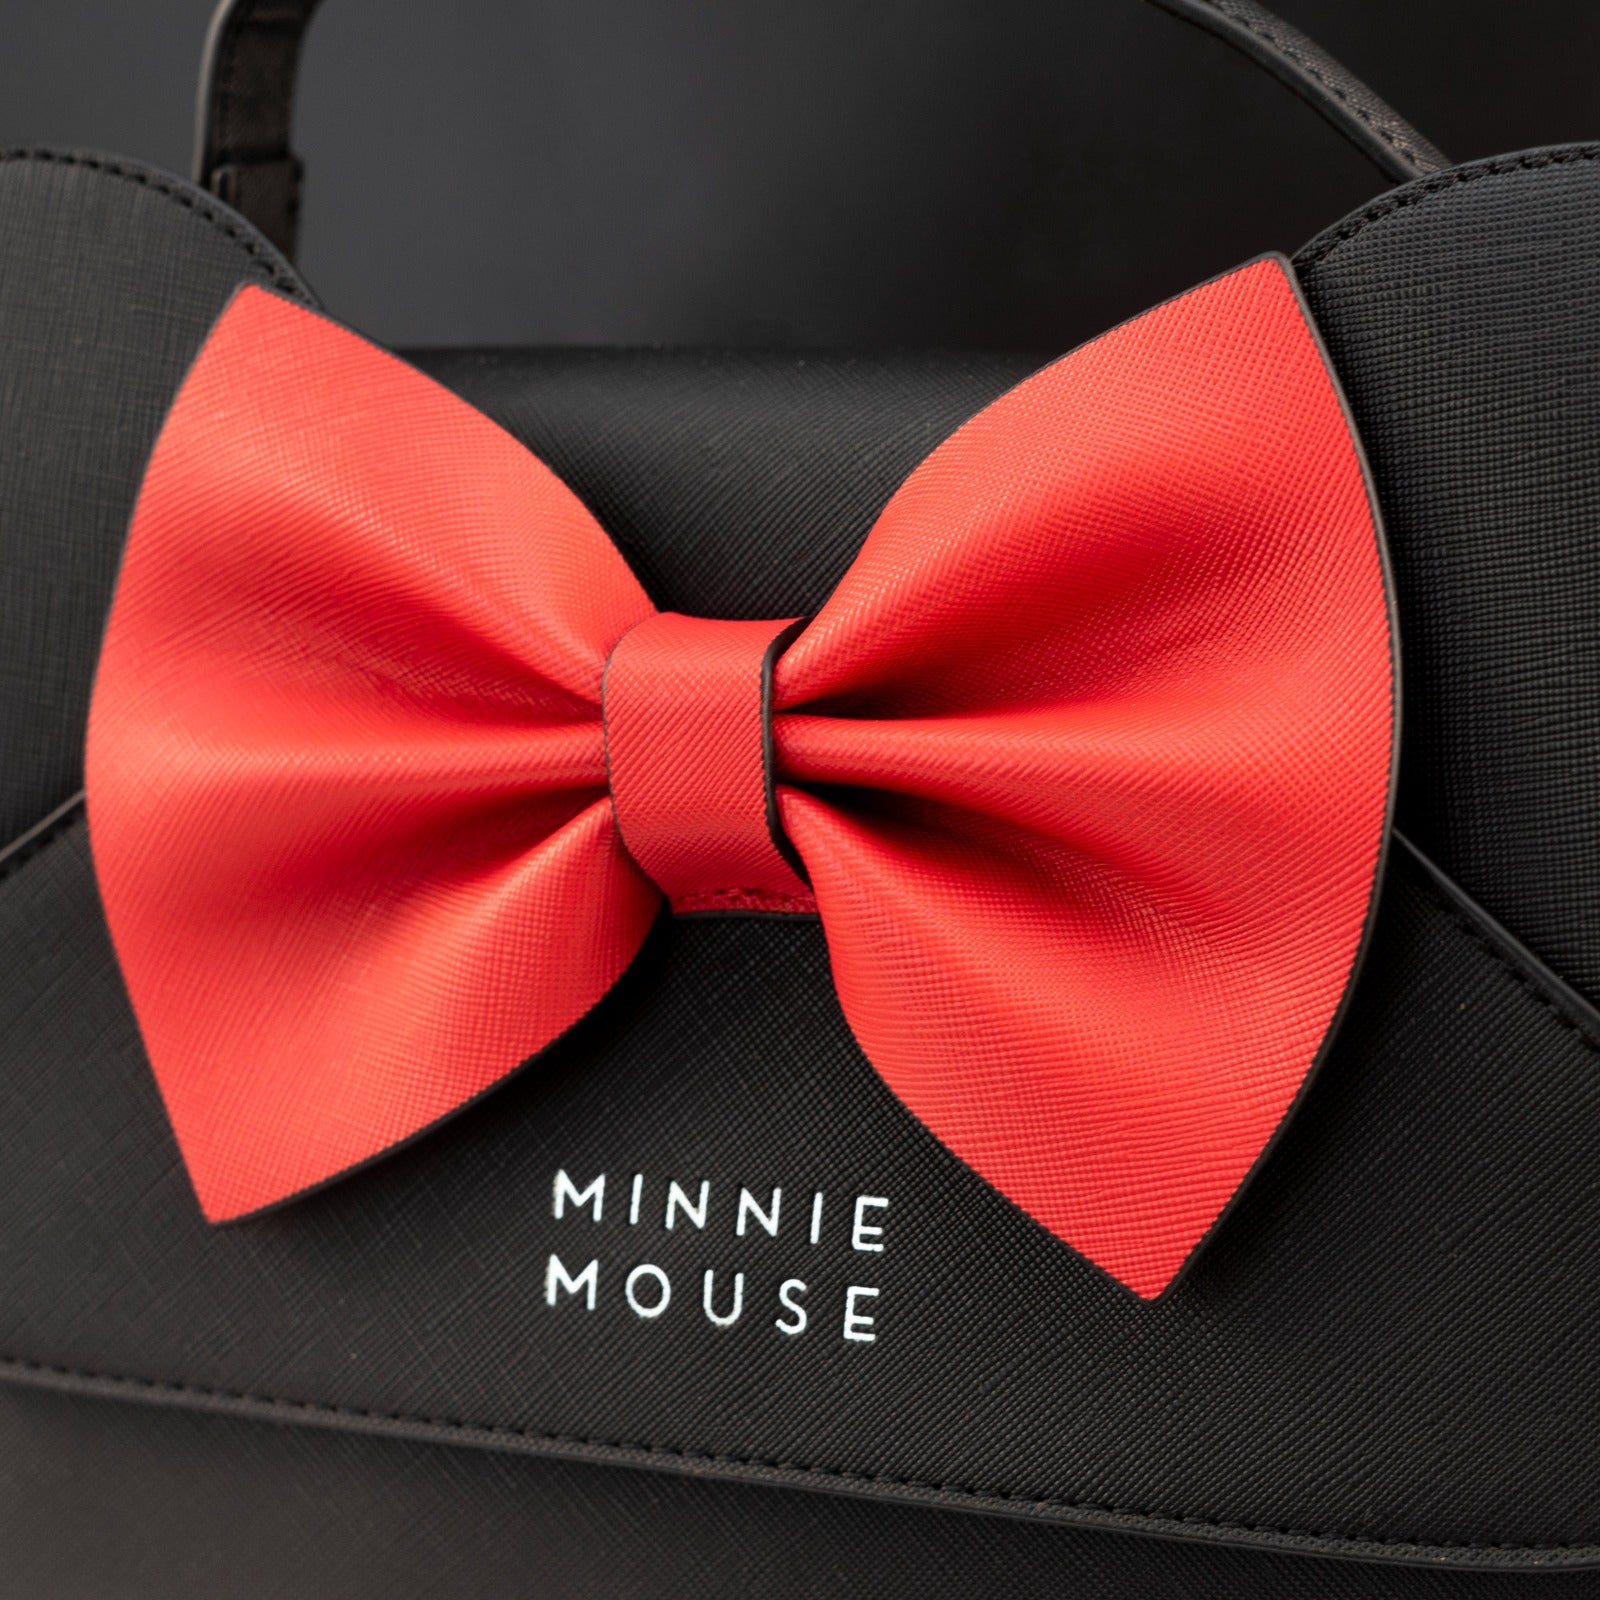 Loungefly x Minnie Mouse Ears & Bow Crossbody Handbag